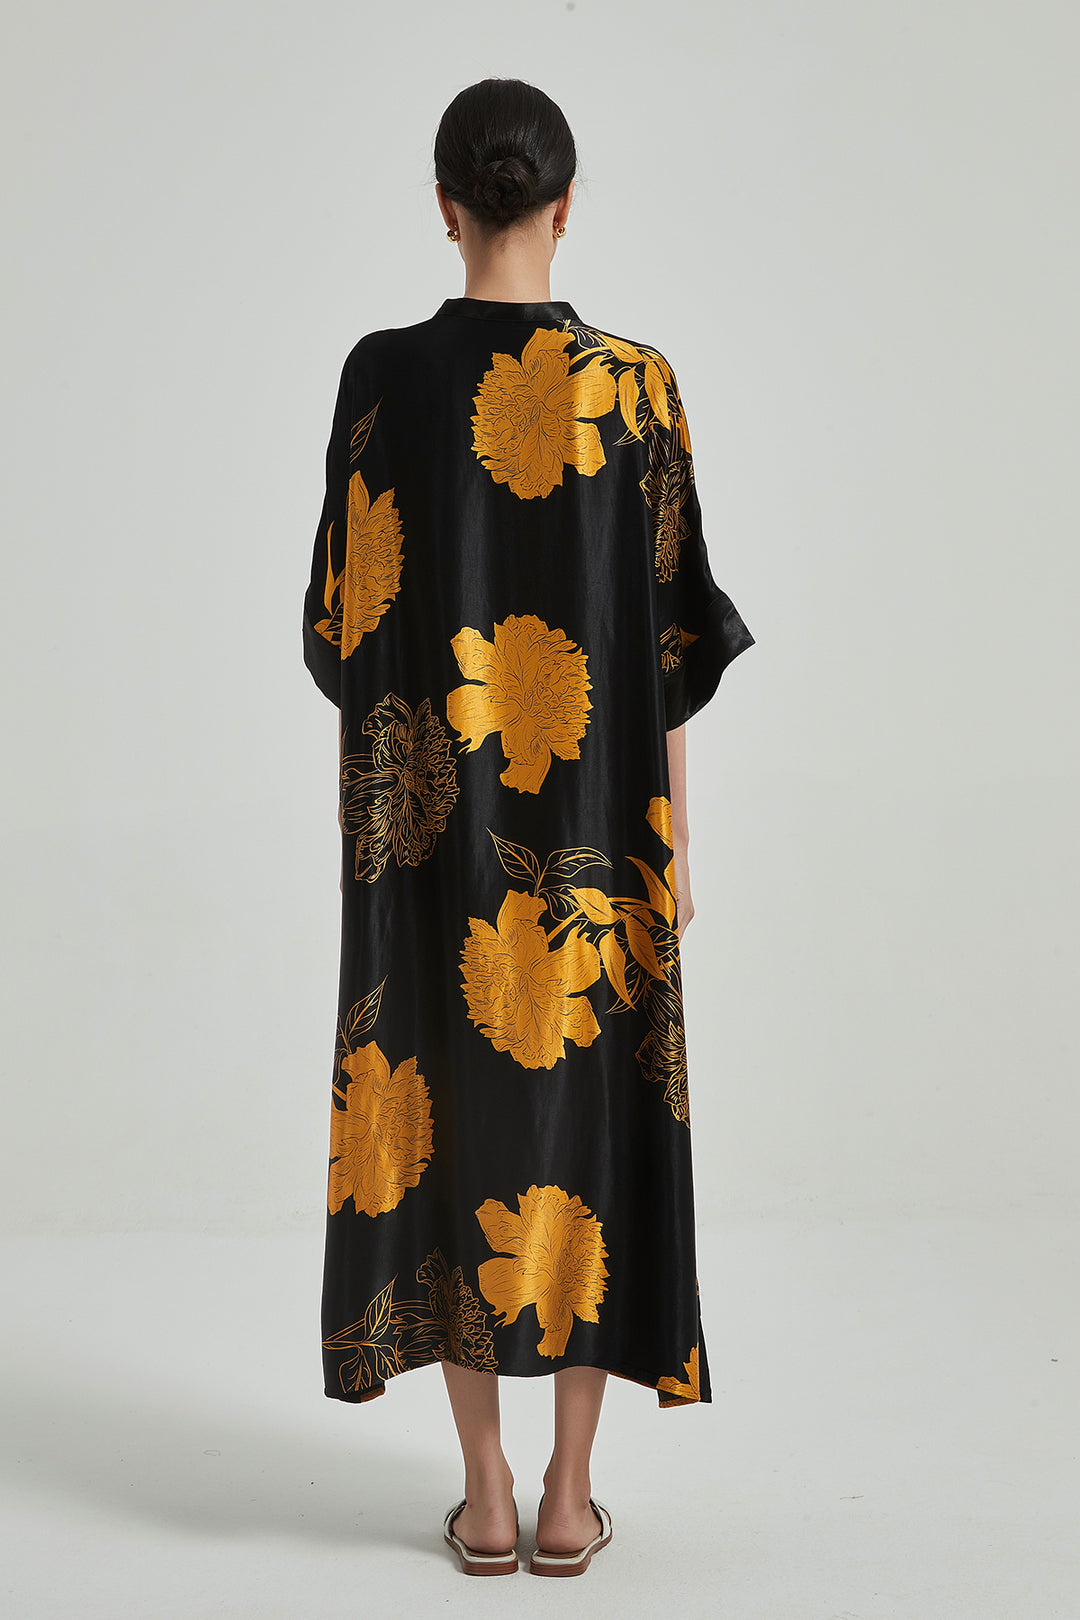 Vestido maxi vintage com design de flores grandes plus size